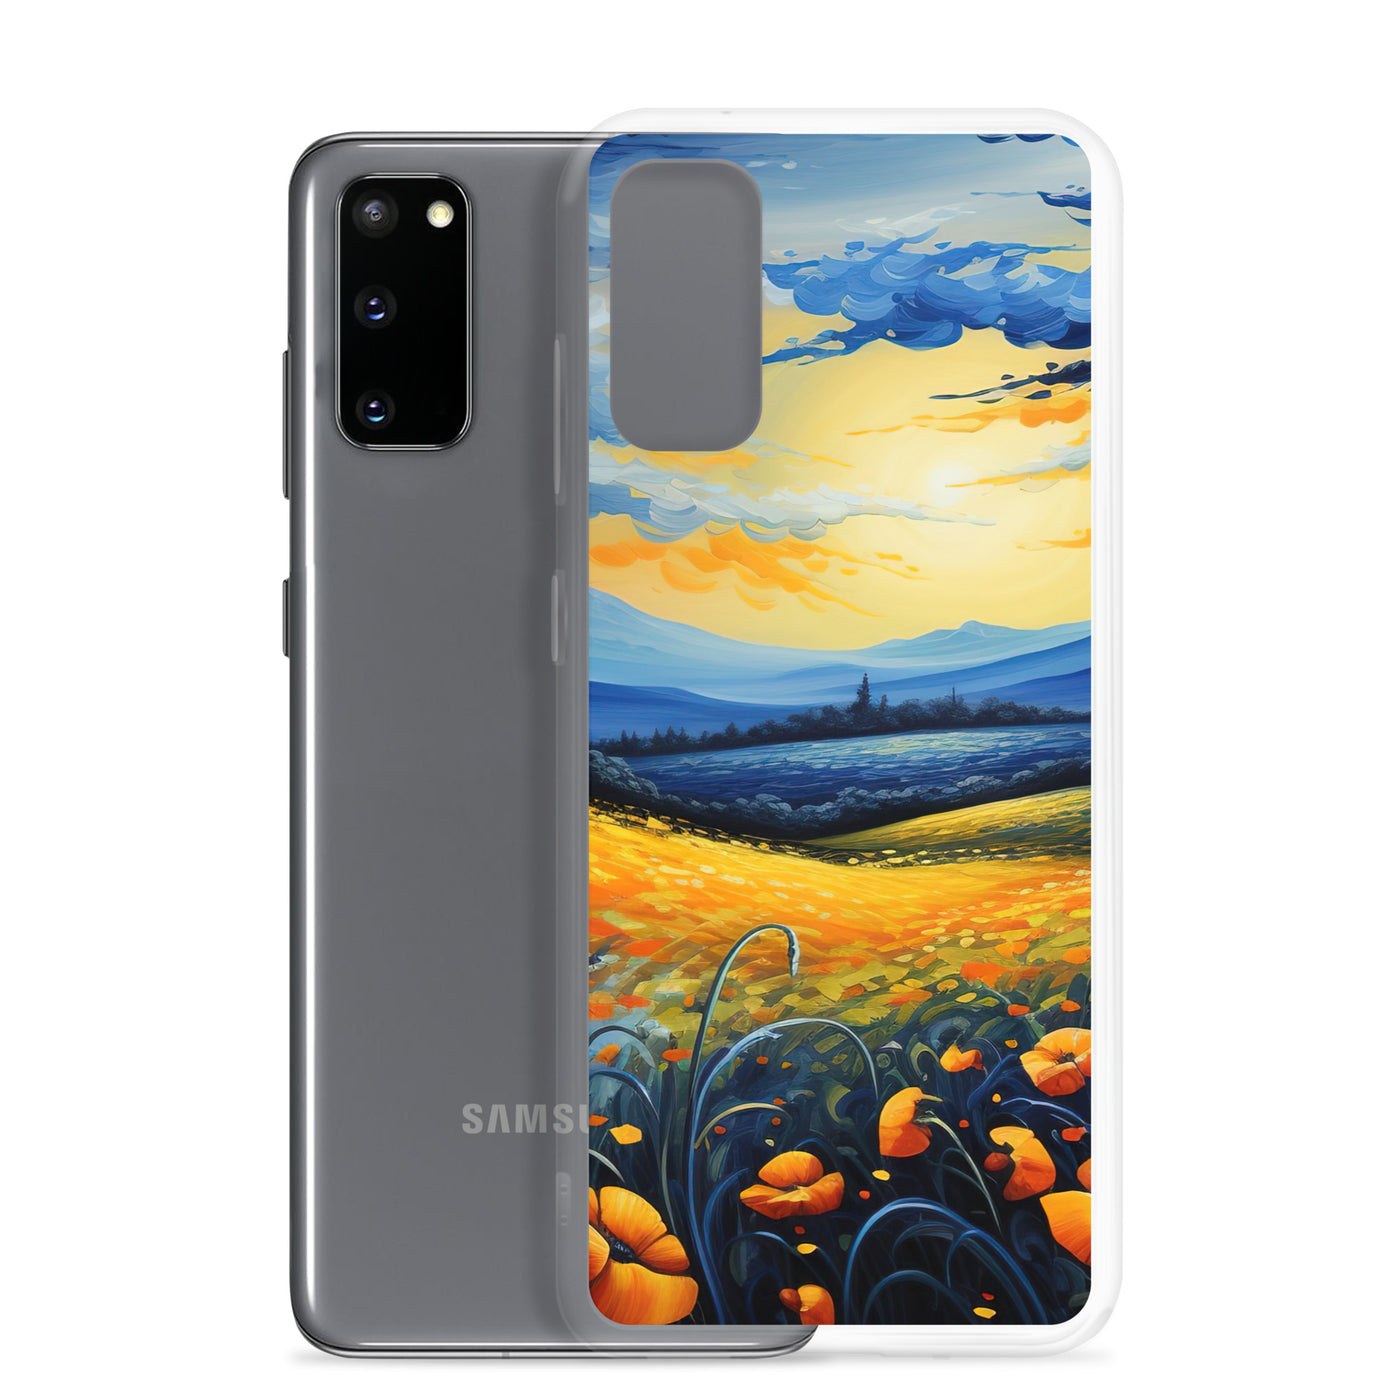 Berglandschaft mit schönen gelben Blumen - Landschaftsmalerei - Samsung Schutzhülle (durchsichtig) berge xxx